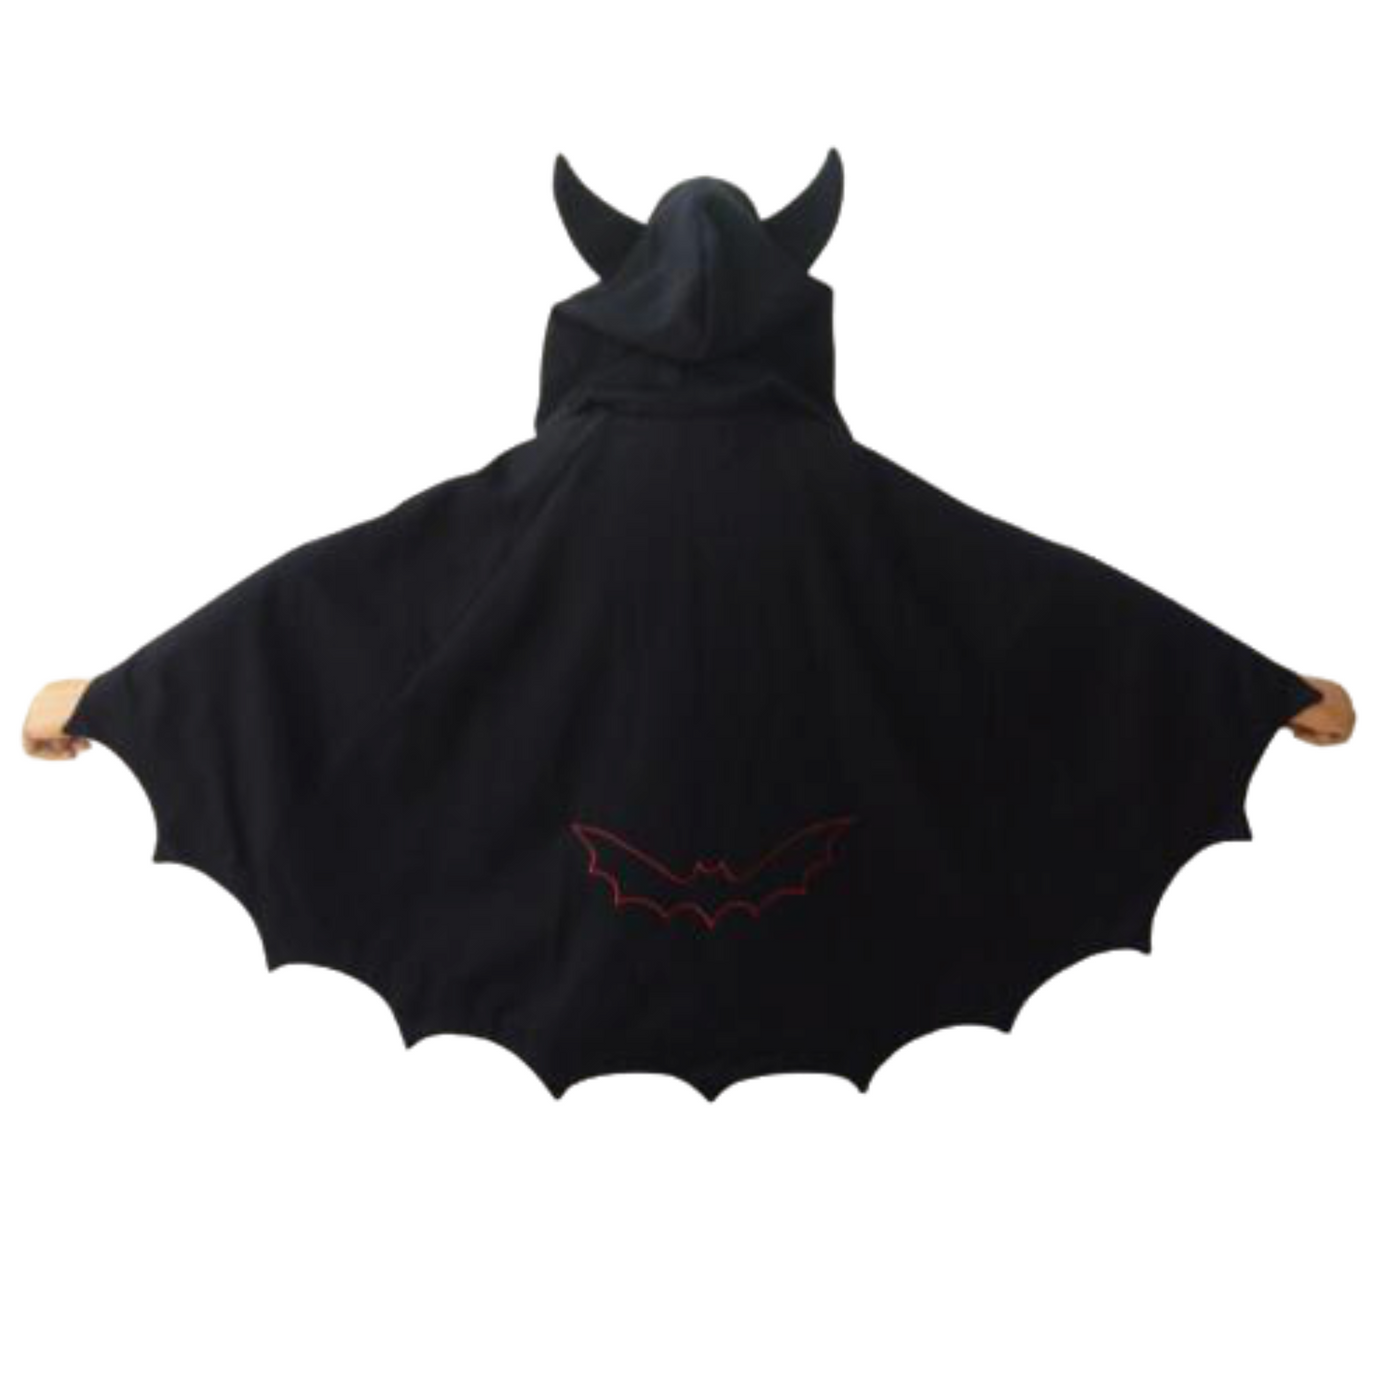 The Batwing Hoodie